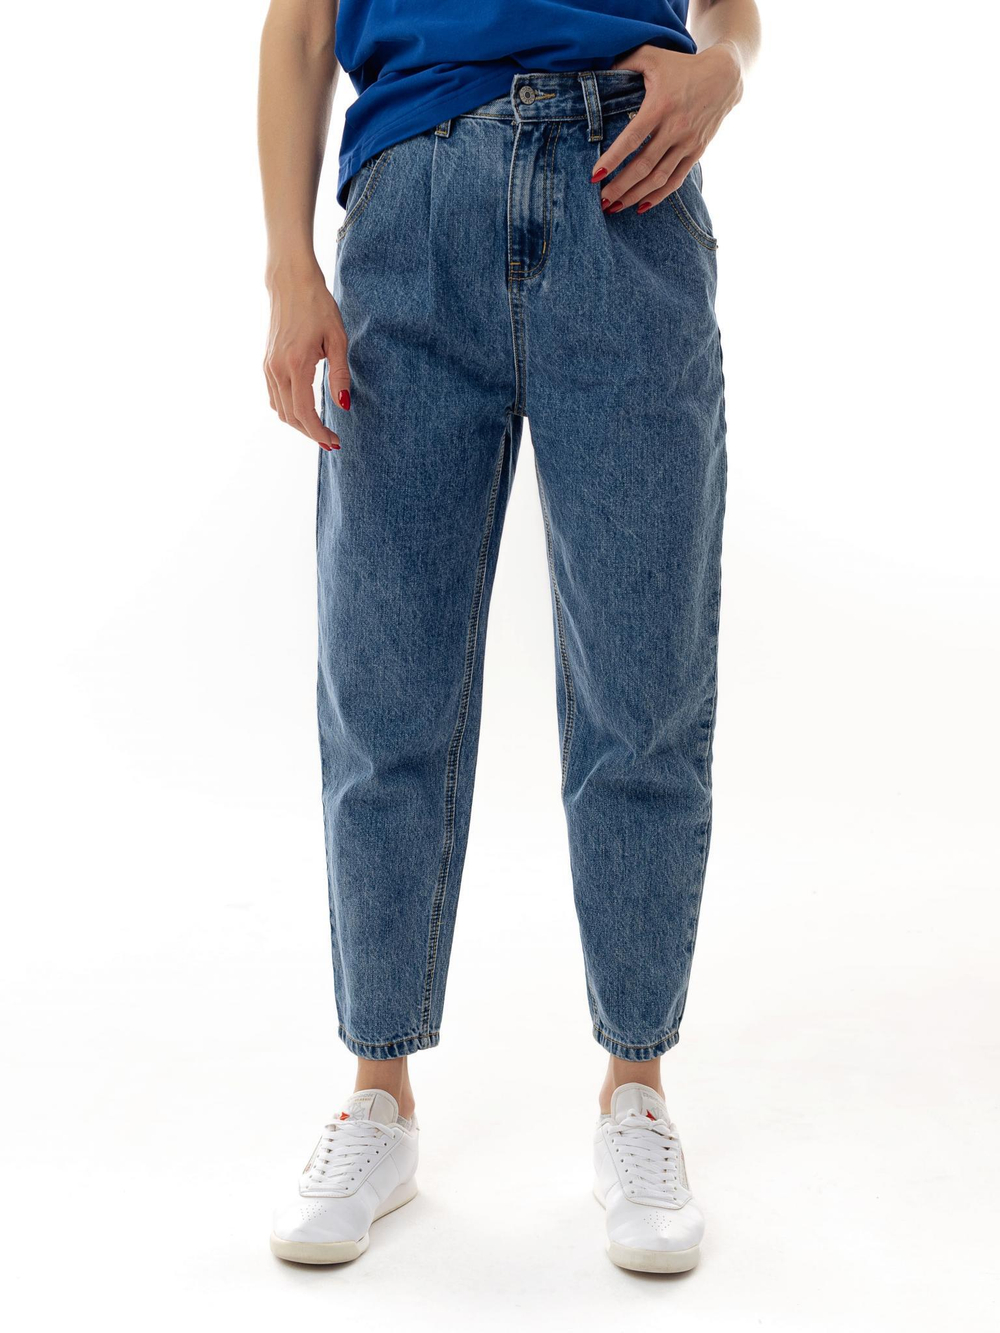 Джинсы женские синие / джинсы с высокой посадкой / джинсы с защипами